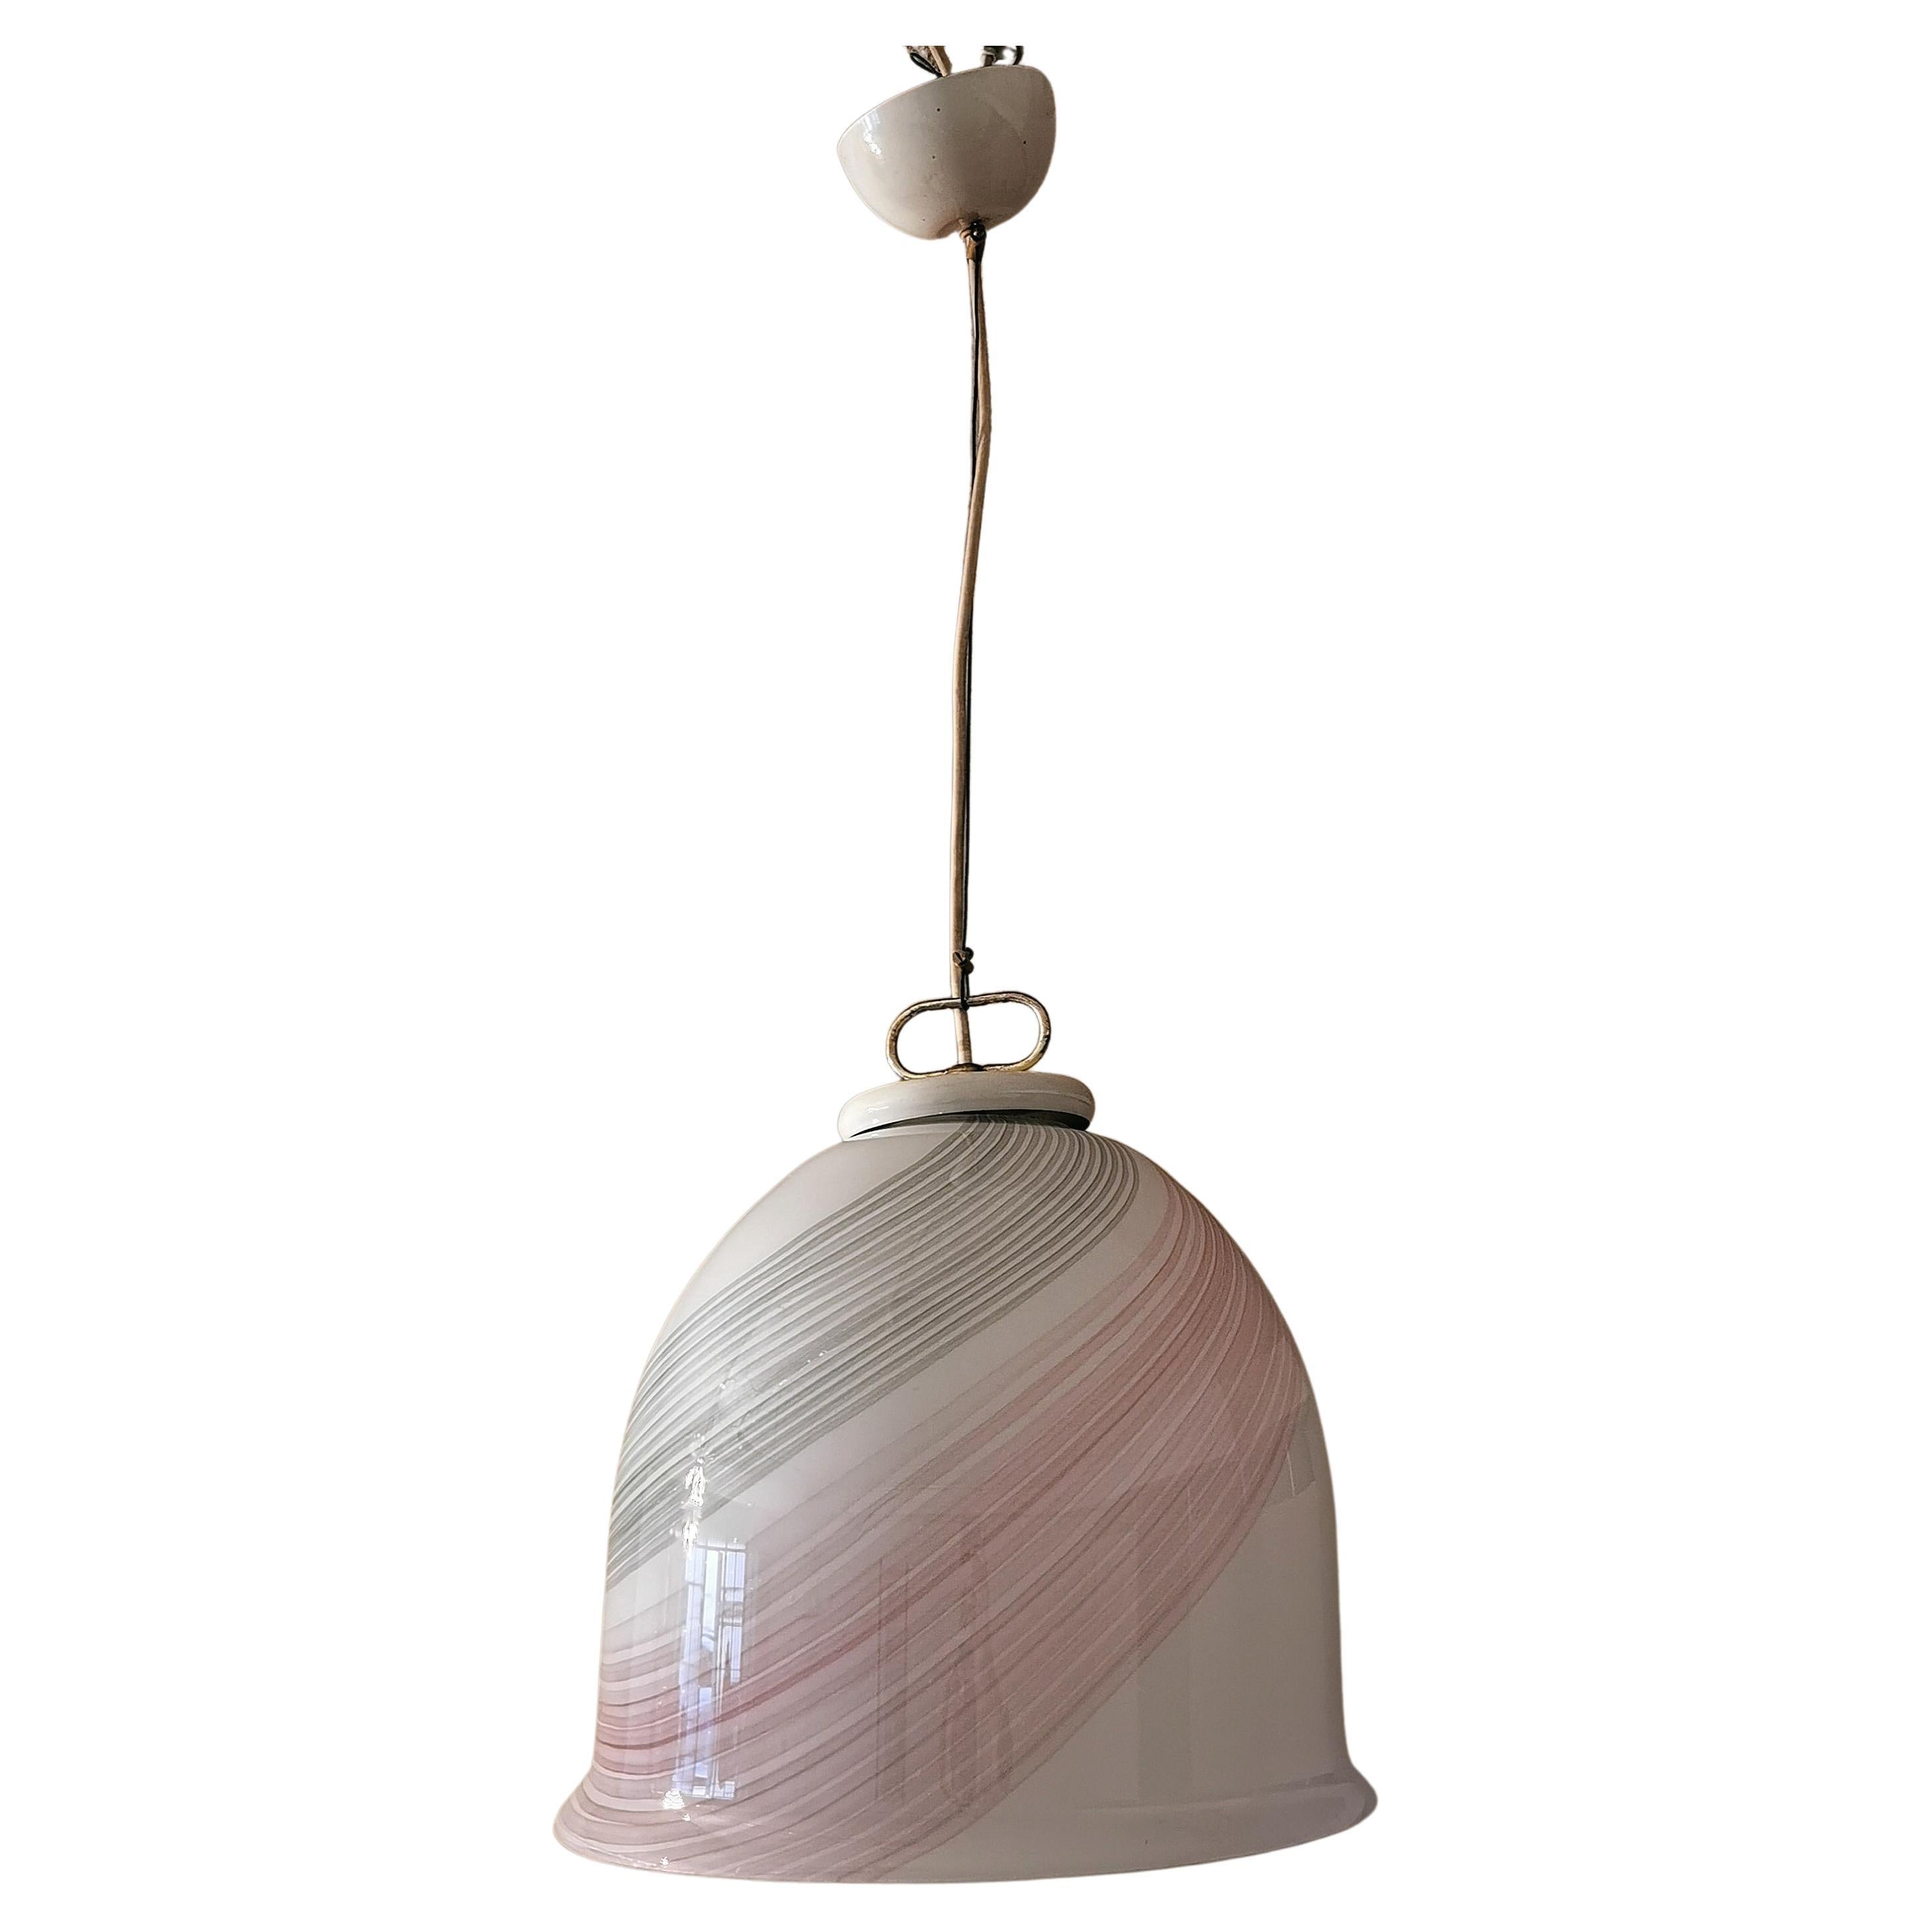 Midcentury Chandelier Pendant Suspension Murano Glass Metal Italian Design 1970s